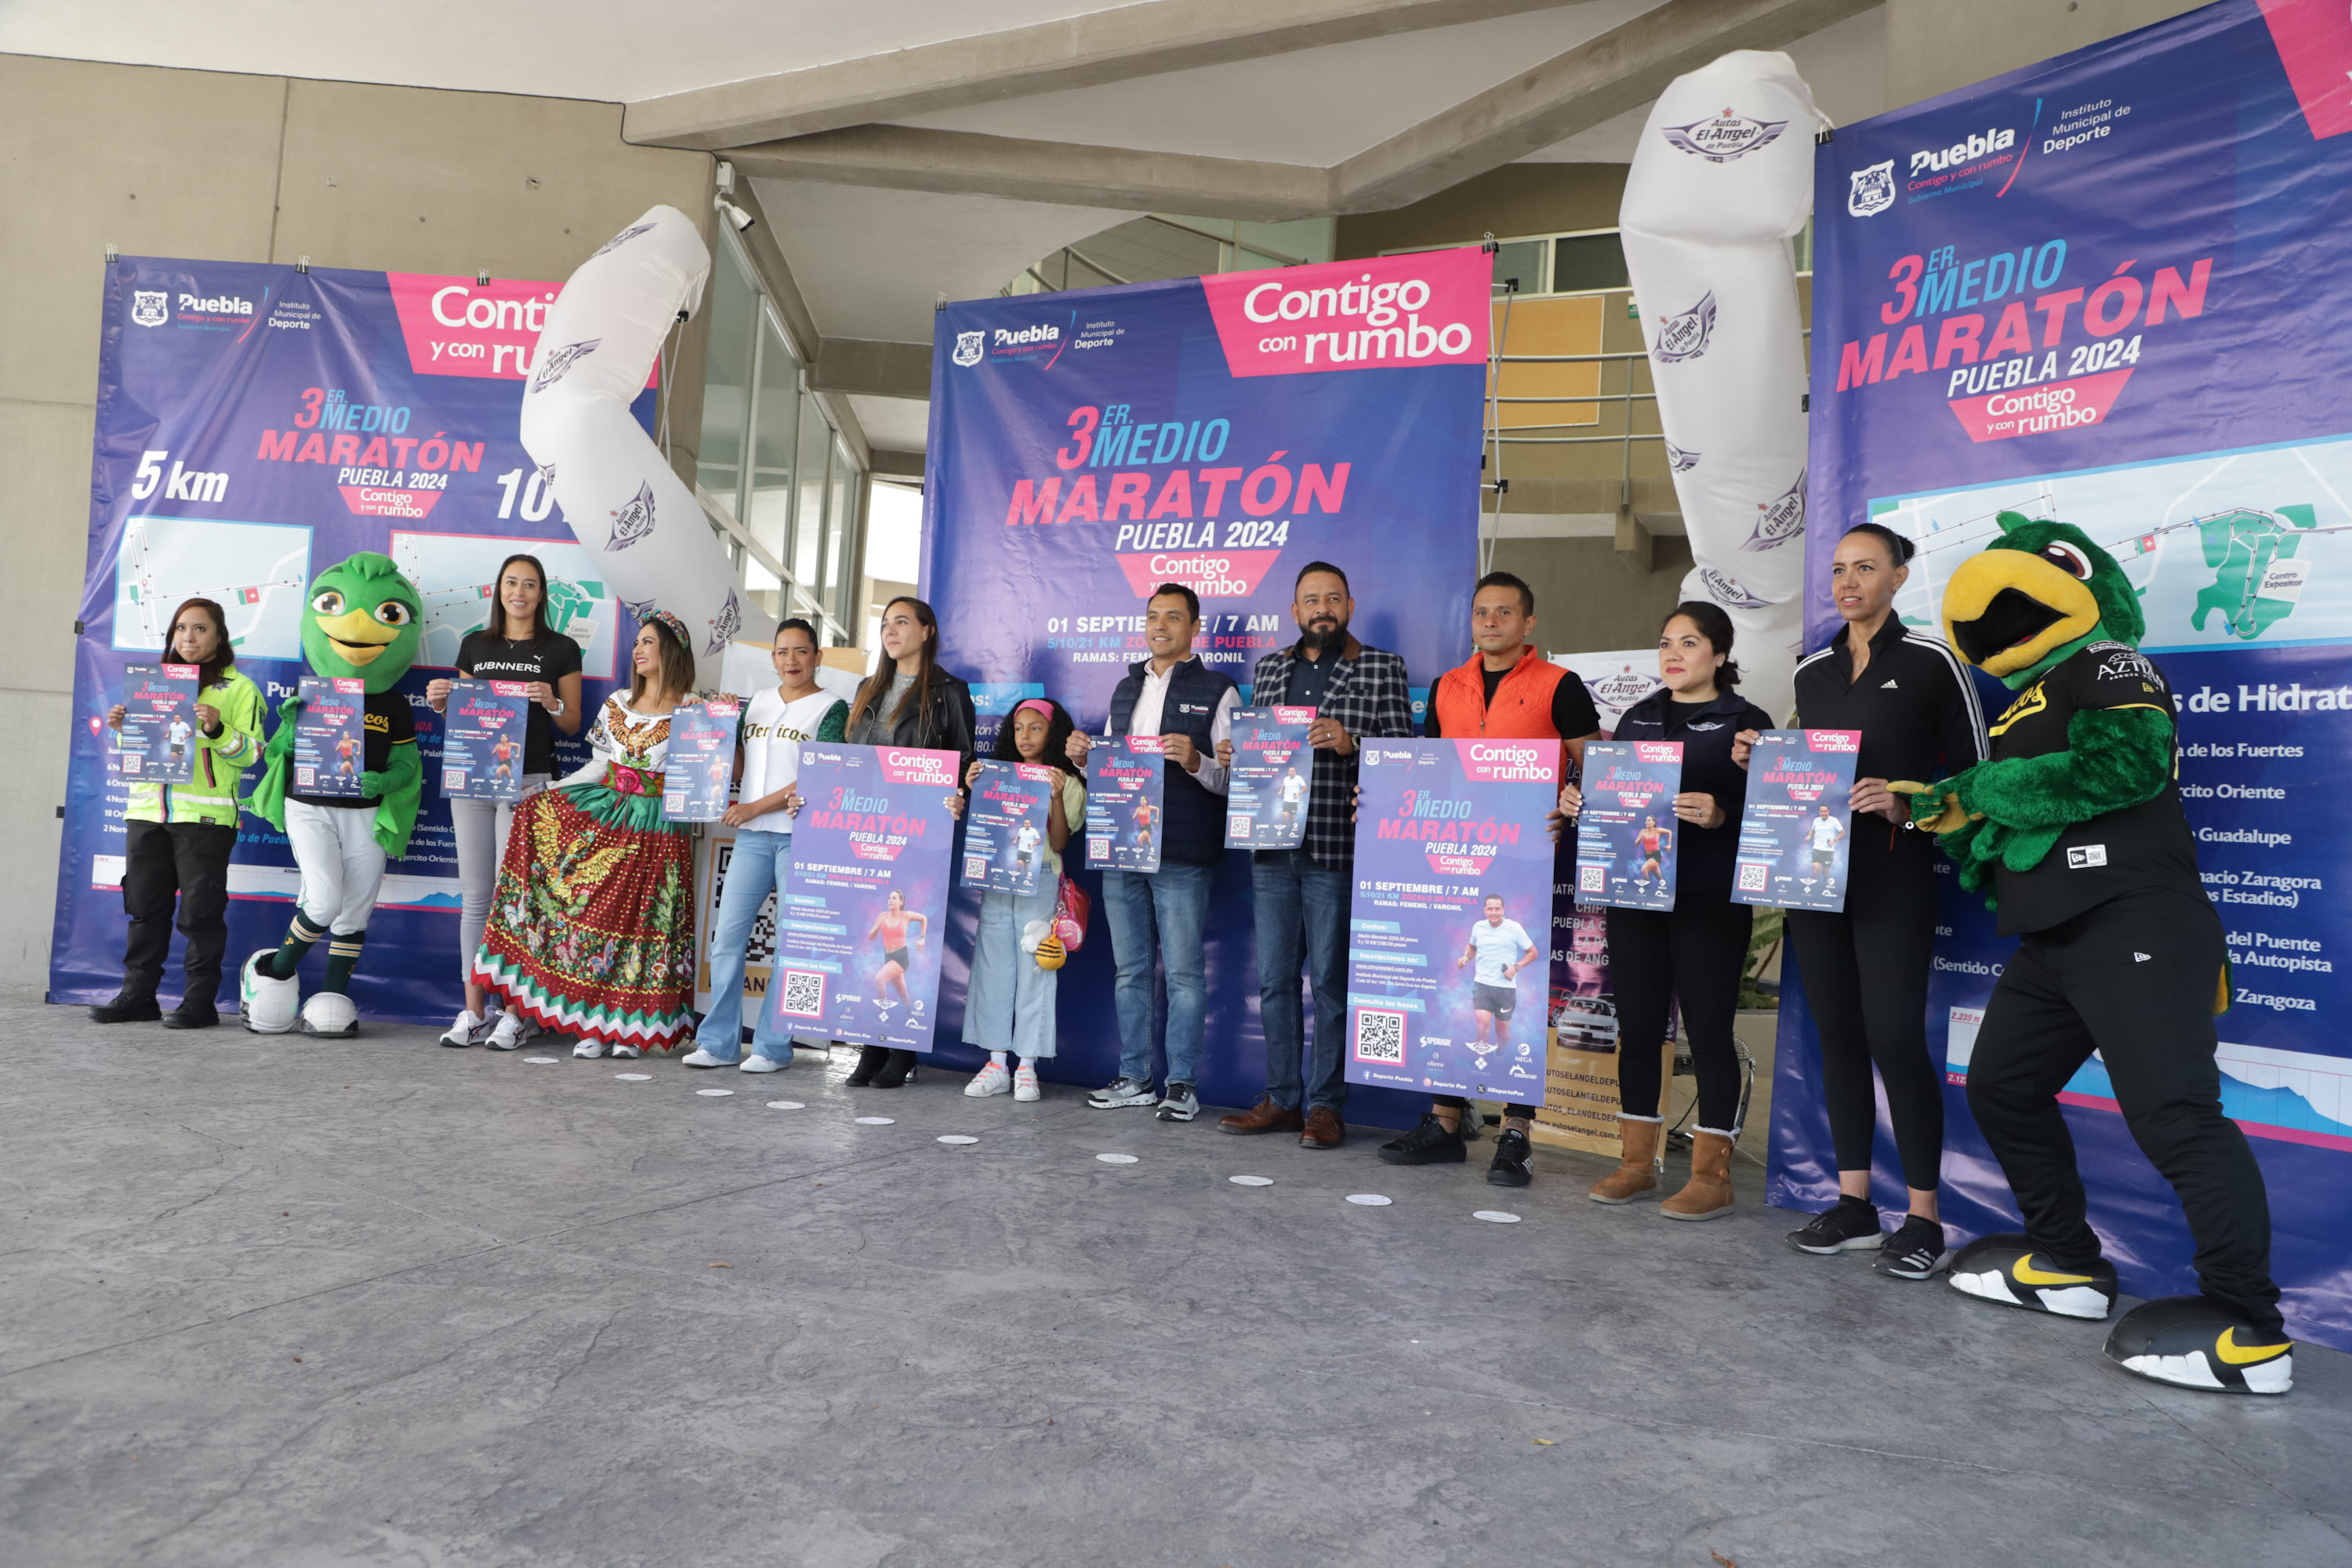 VIDEO Anuncian Tercer Medio Maratón Puebla Contigo y Con Rumbo